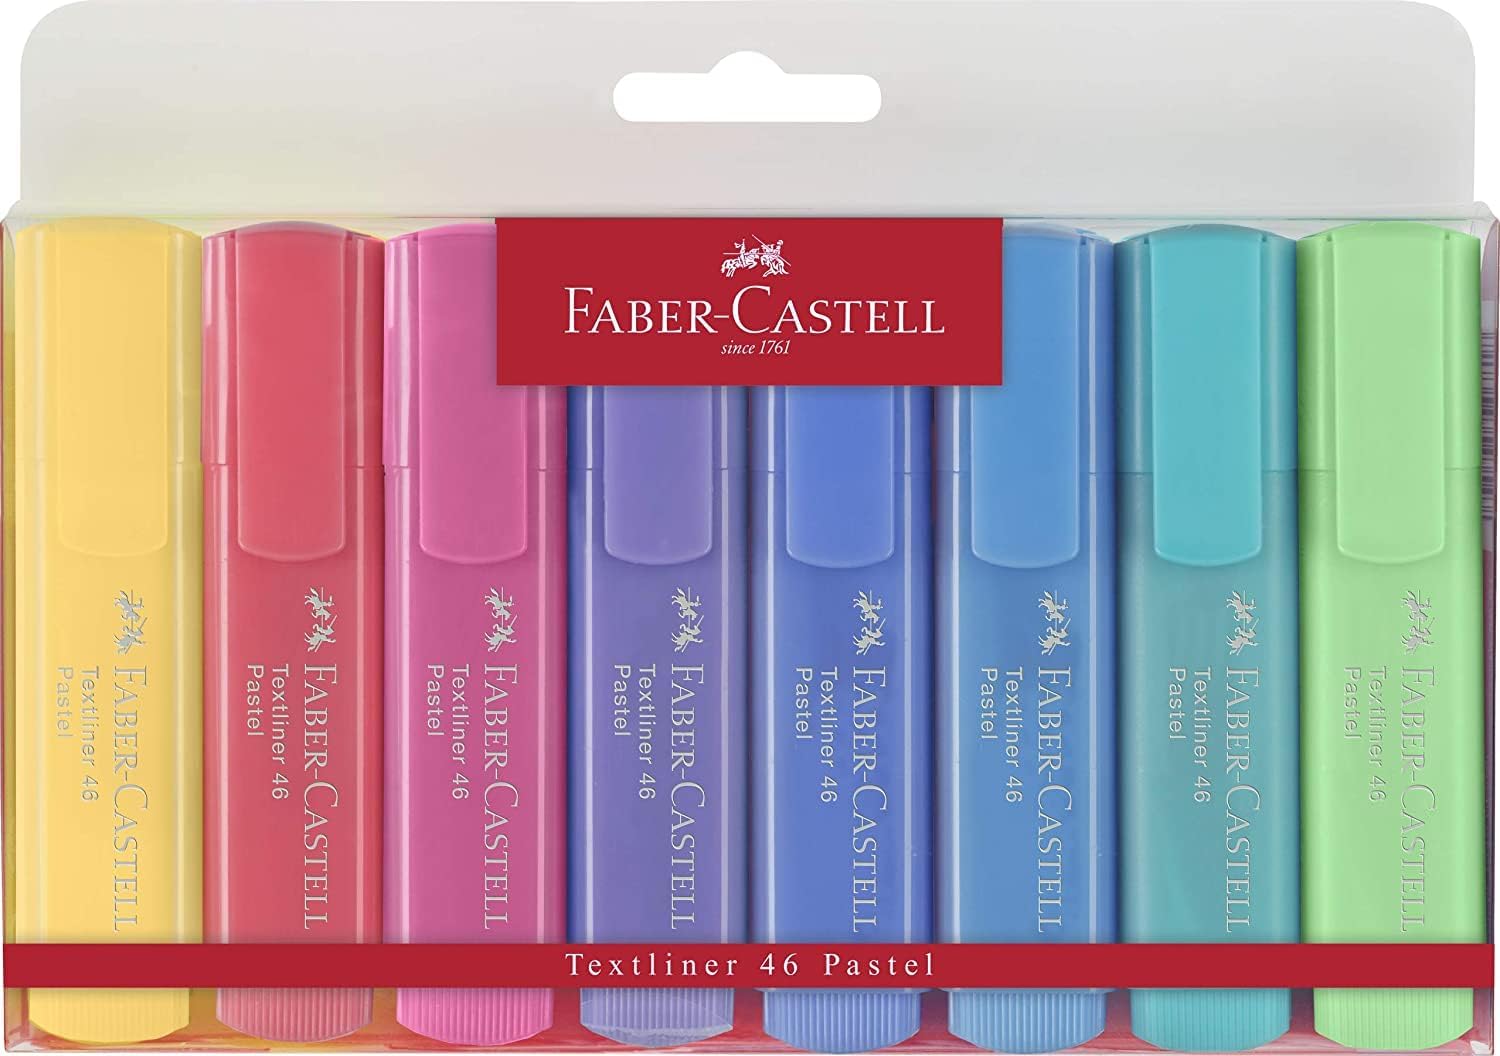 Faber-Castell Textliner 46 Pastel Lot de 8 Feutres Fluorescents - Pointe Biseautée - Trait entre 1mm et 5mm - Encre à Base d'Eau - Couleurs Assorties